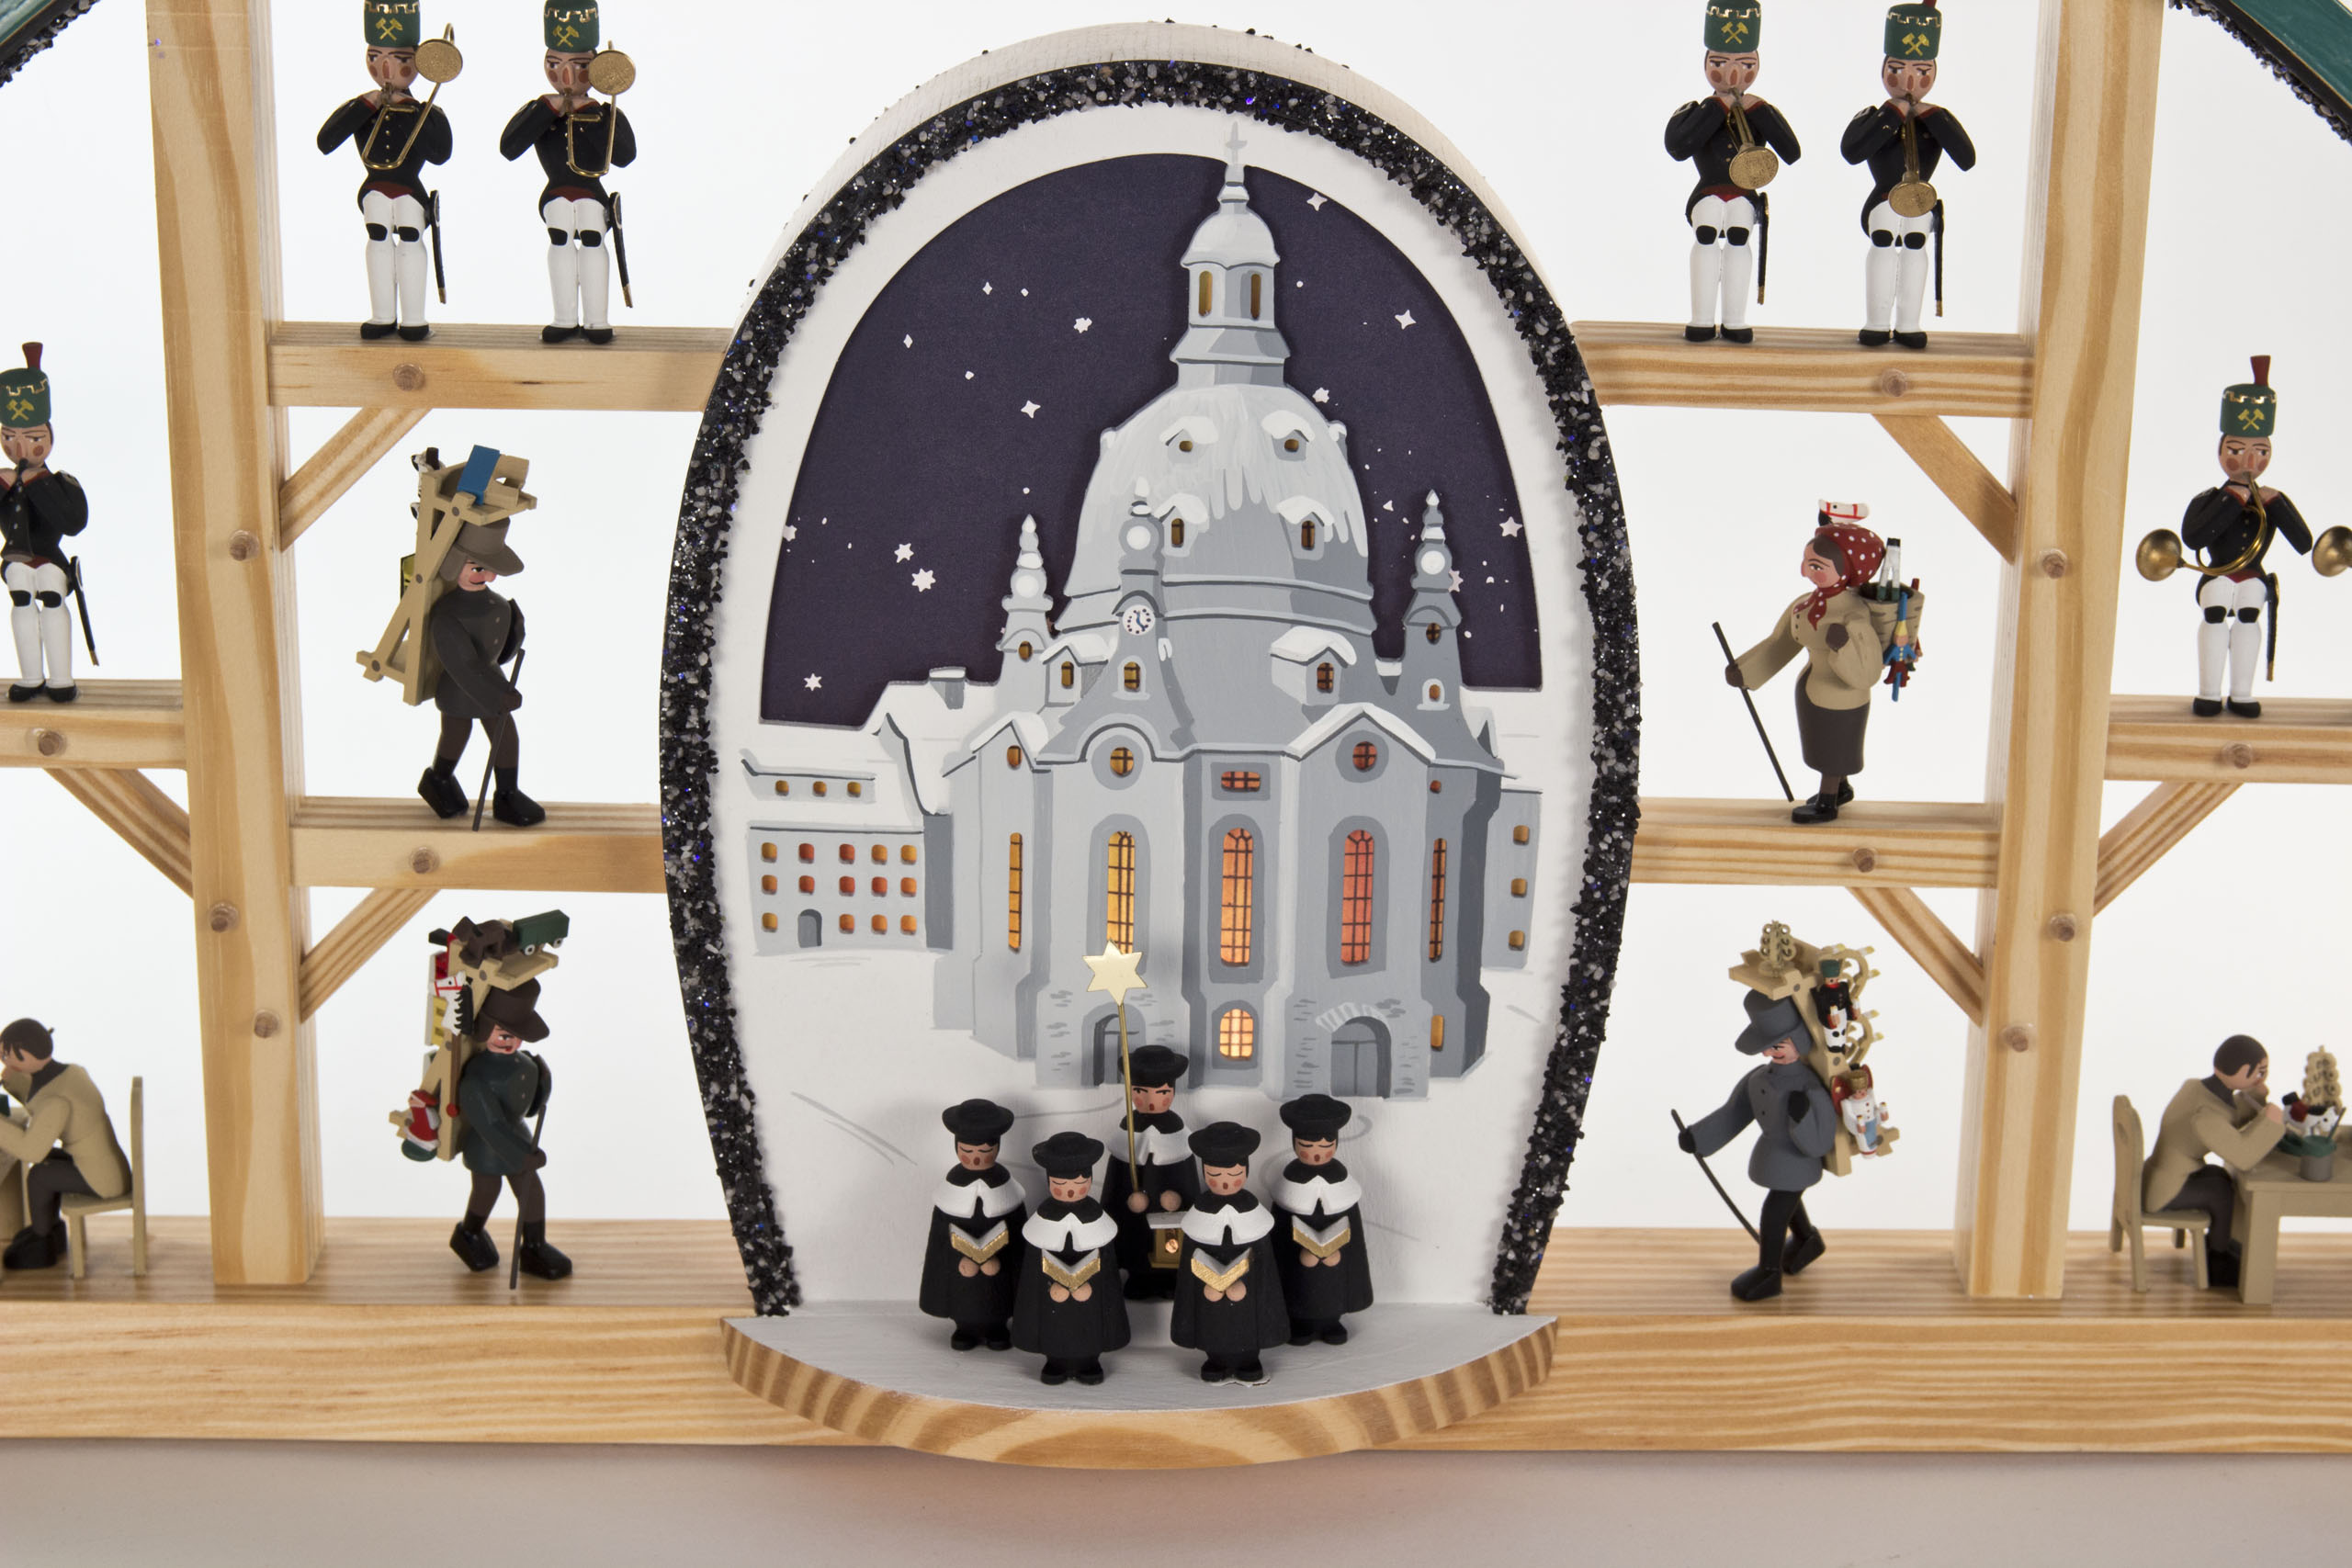 Schwibbogen mit Dresdner Frauenkirche, Kurrende und Erzgebirgsfiguren, elektrisch beleuchtet